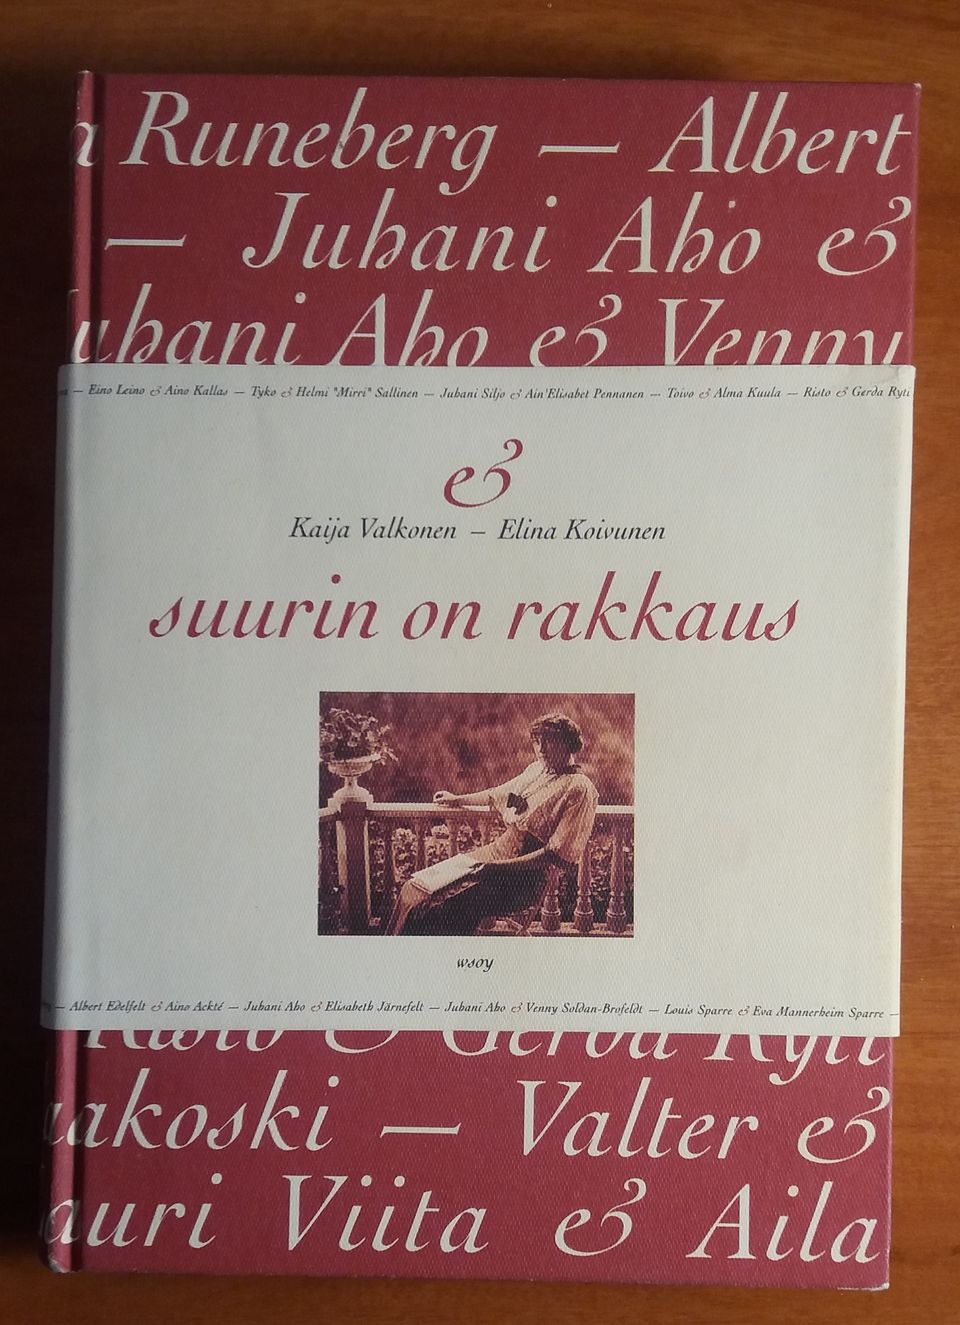 Kaija Valkonen, Elina Koivunen SUURIN ON RAKKAUS Wsoy 1997